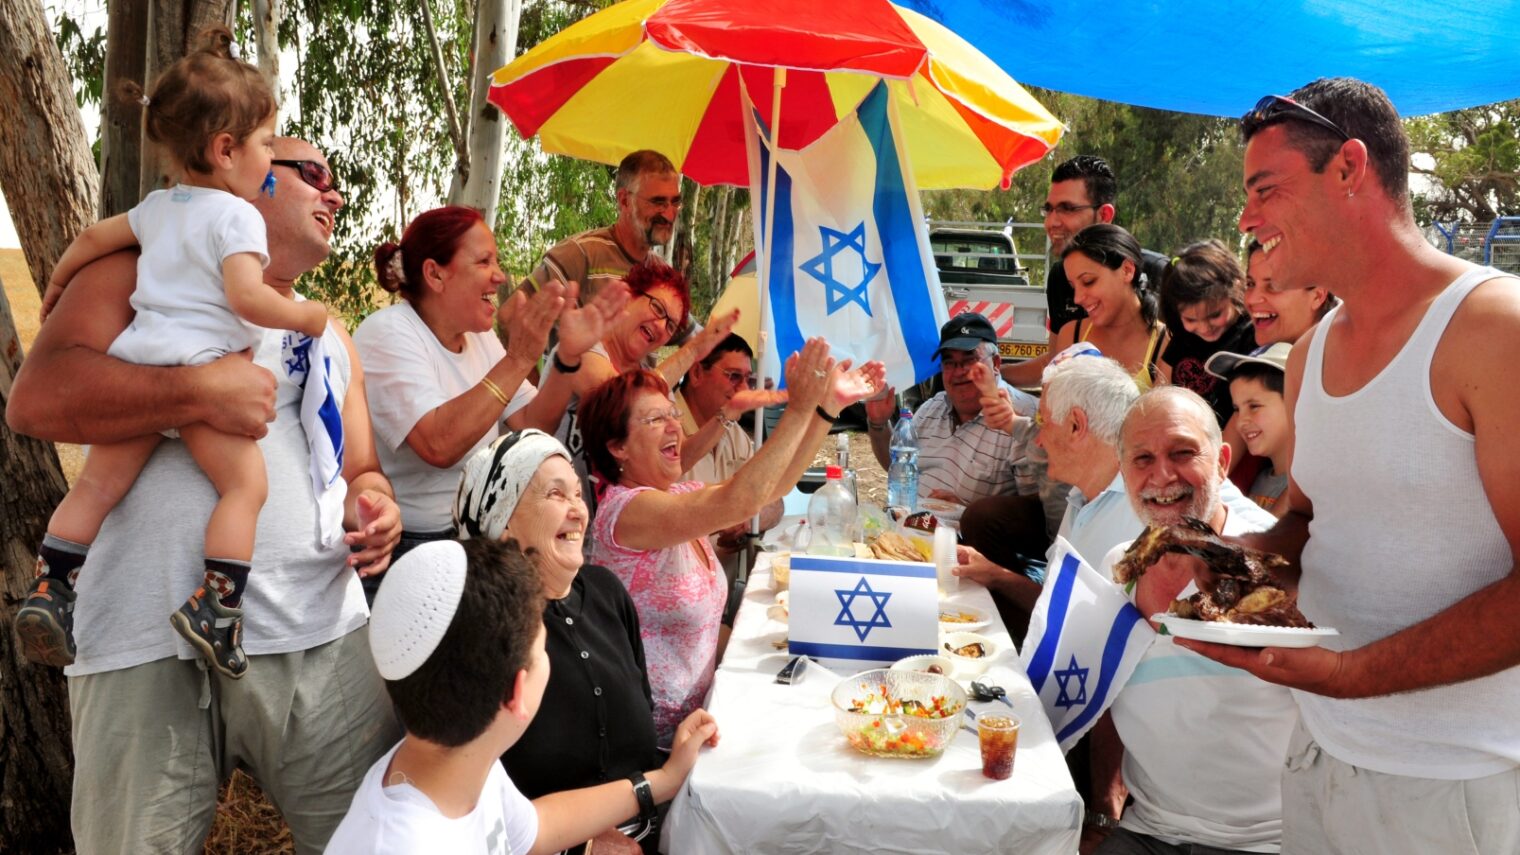 An Israeli family picnicking in Nir Am. Photo by ChameleonsEye/Shutterstock.com